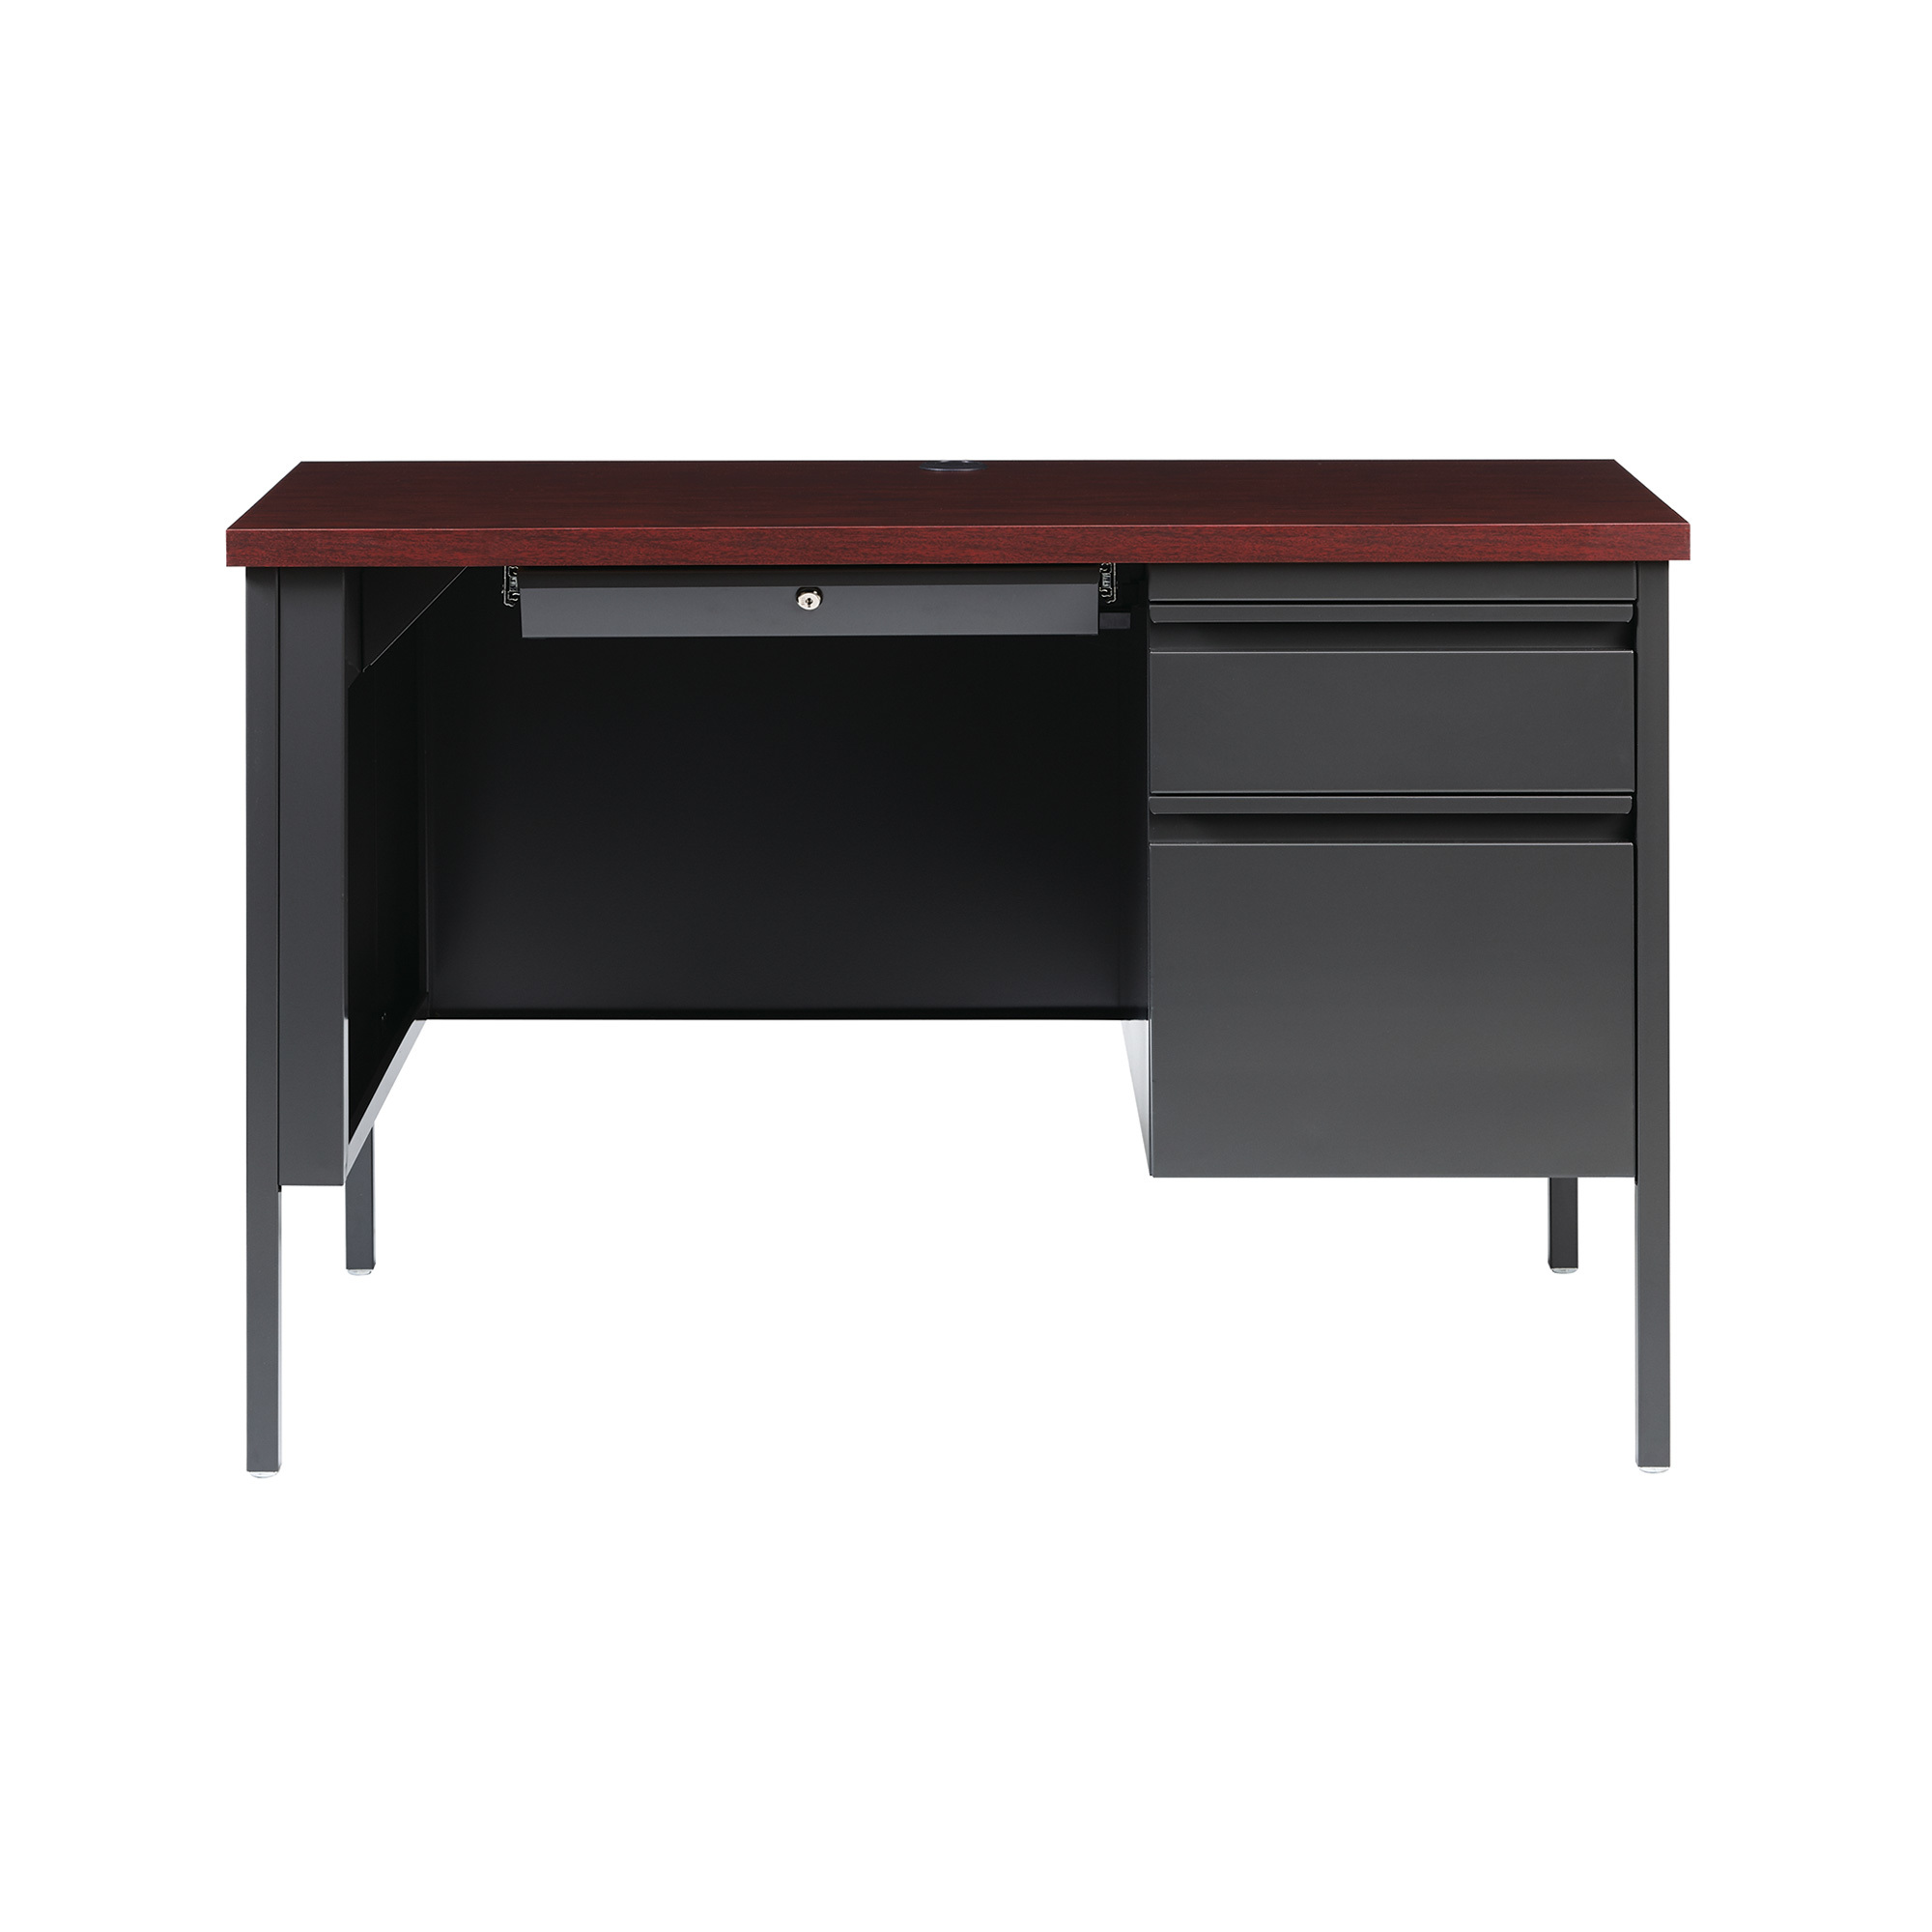 Hirsh Right-Handed Single Desk on Pedestal â Charcoal/Mahogany, 45 1/2Inch W x 24Inch D x 29 1/2Inch H, Model 22201